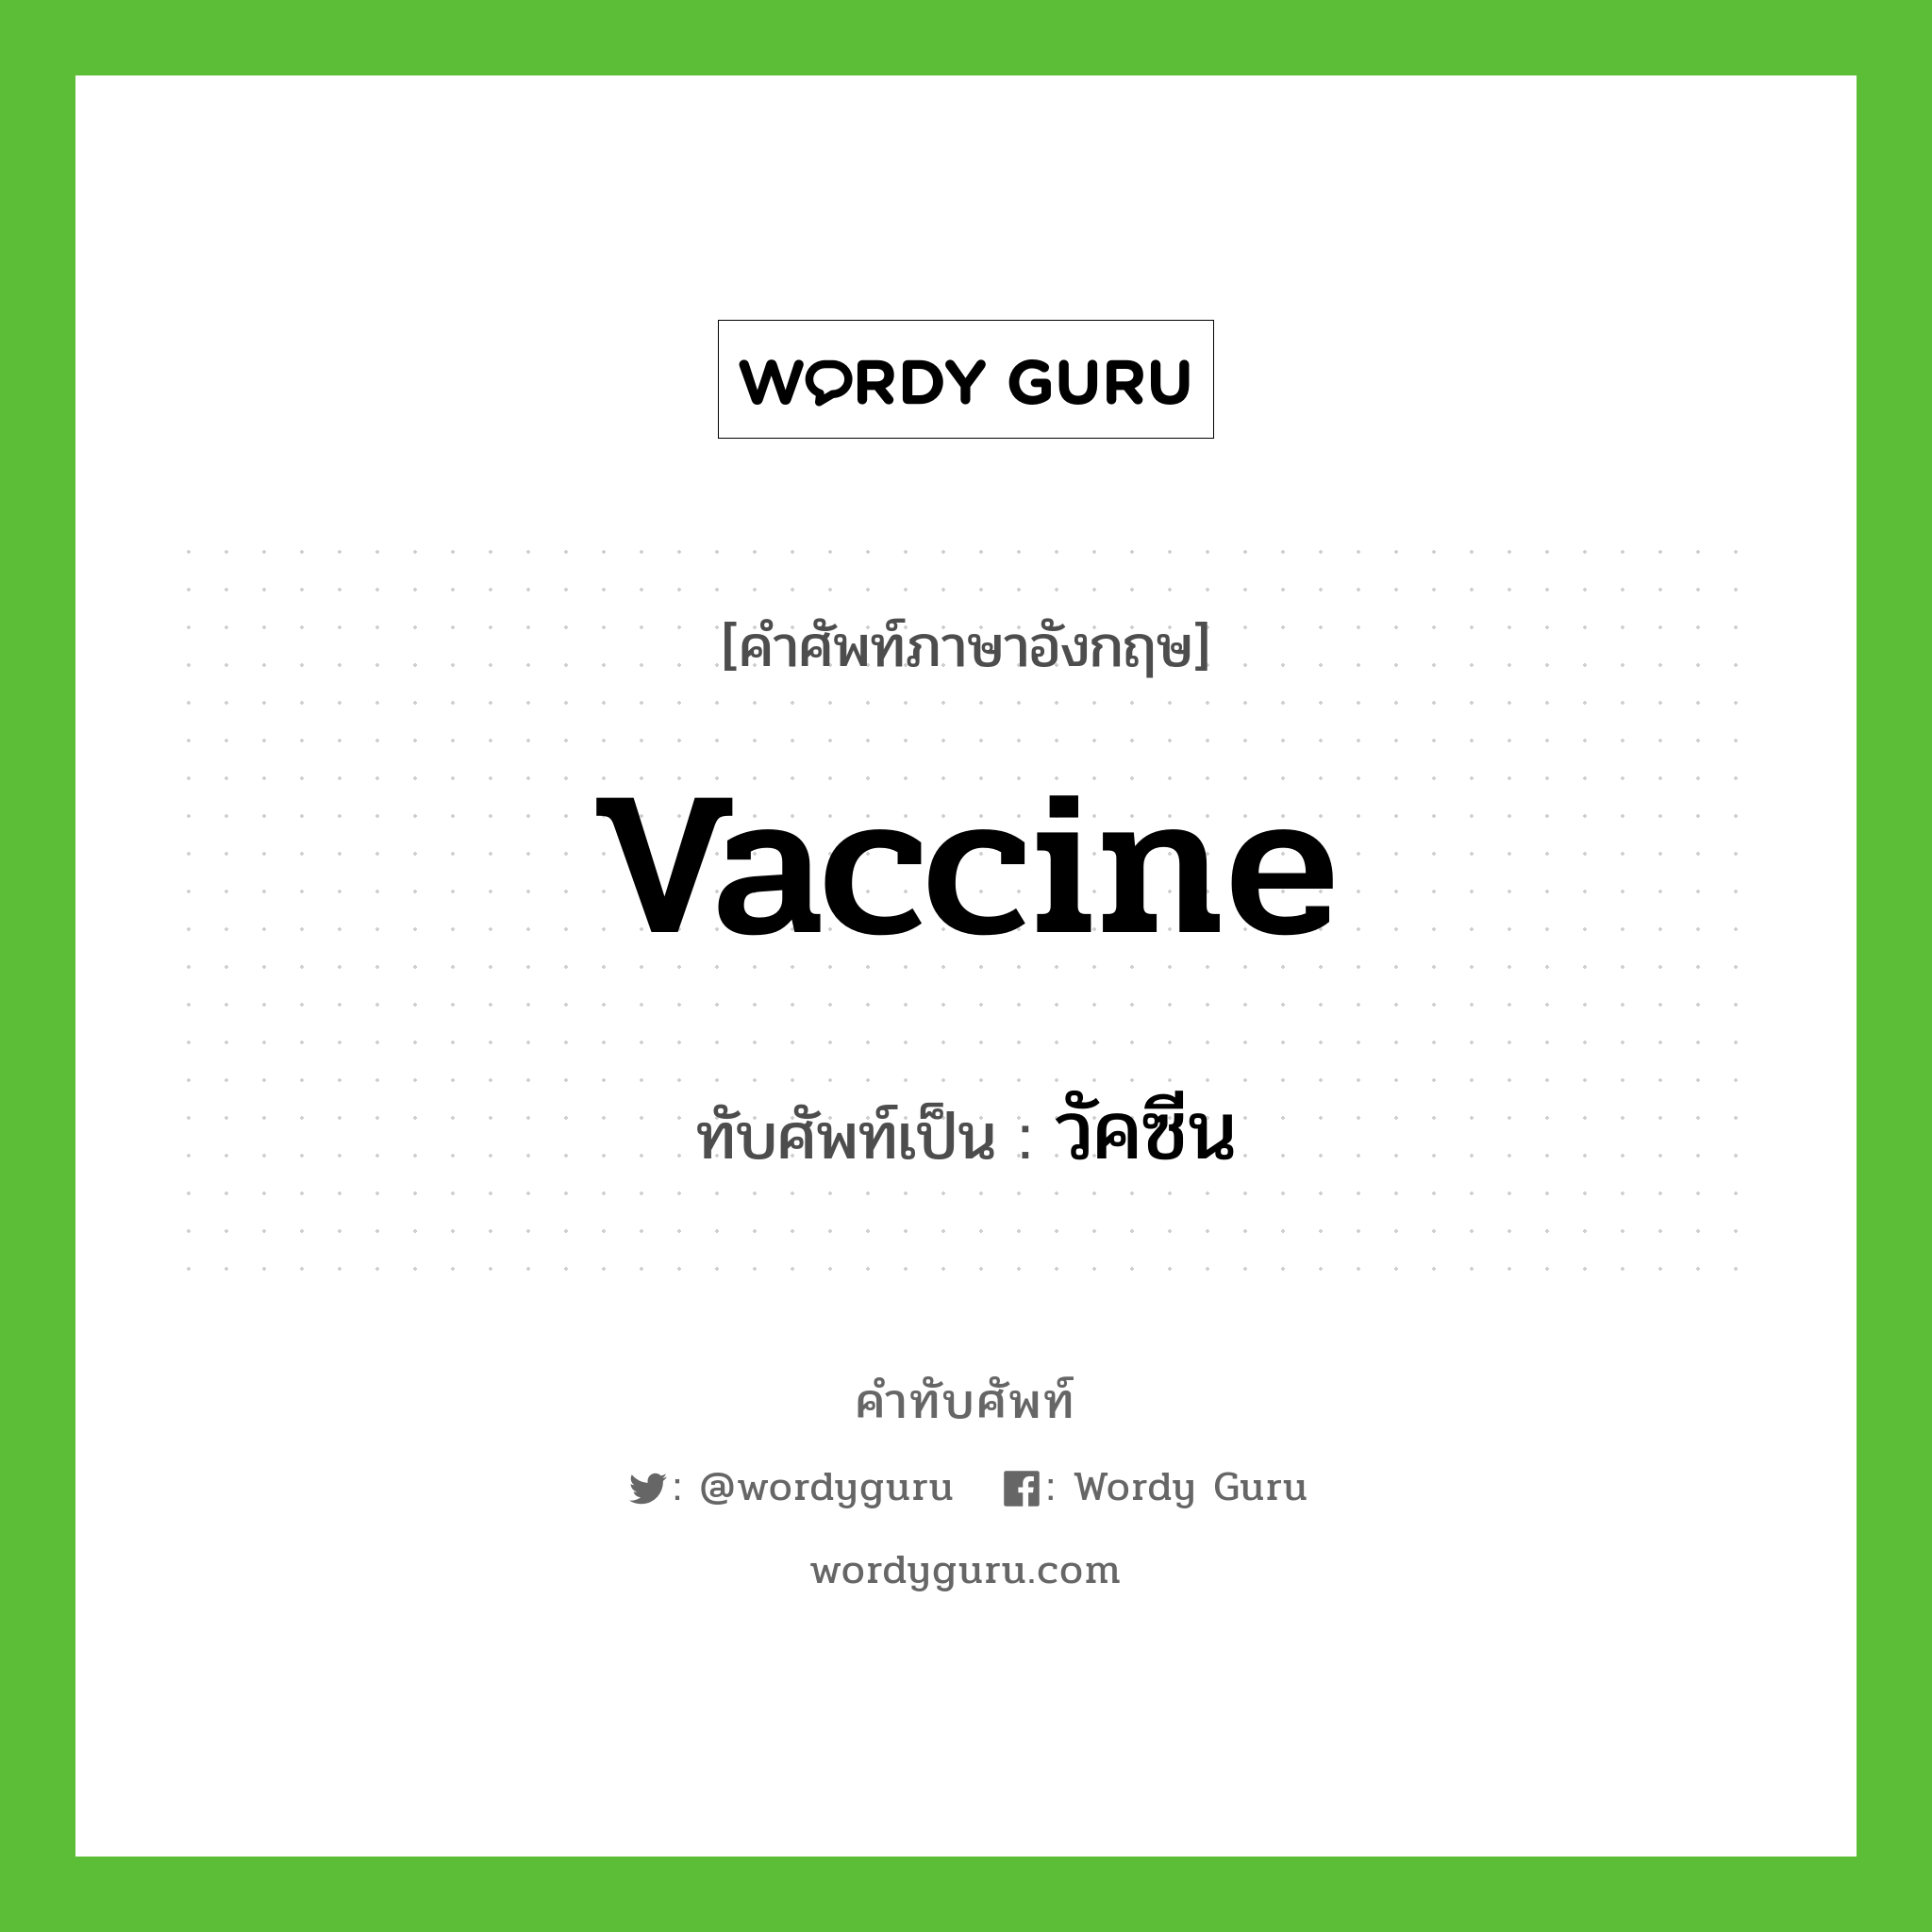 vaccine เขียนเป็นคำไทยว่าอะไร?, คำศัพท์ภาษาอังกฤษ vaccine ทับศัพท์เป็น วัคซีน